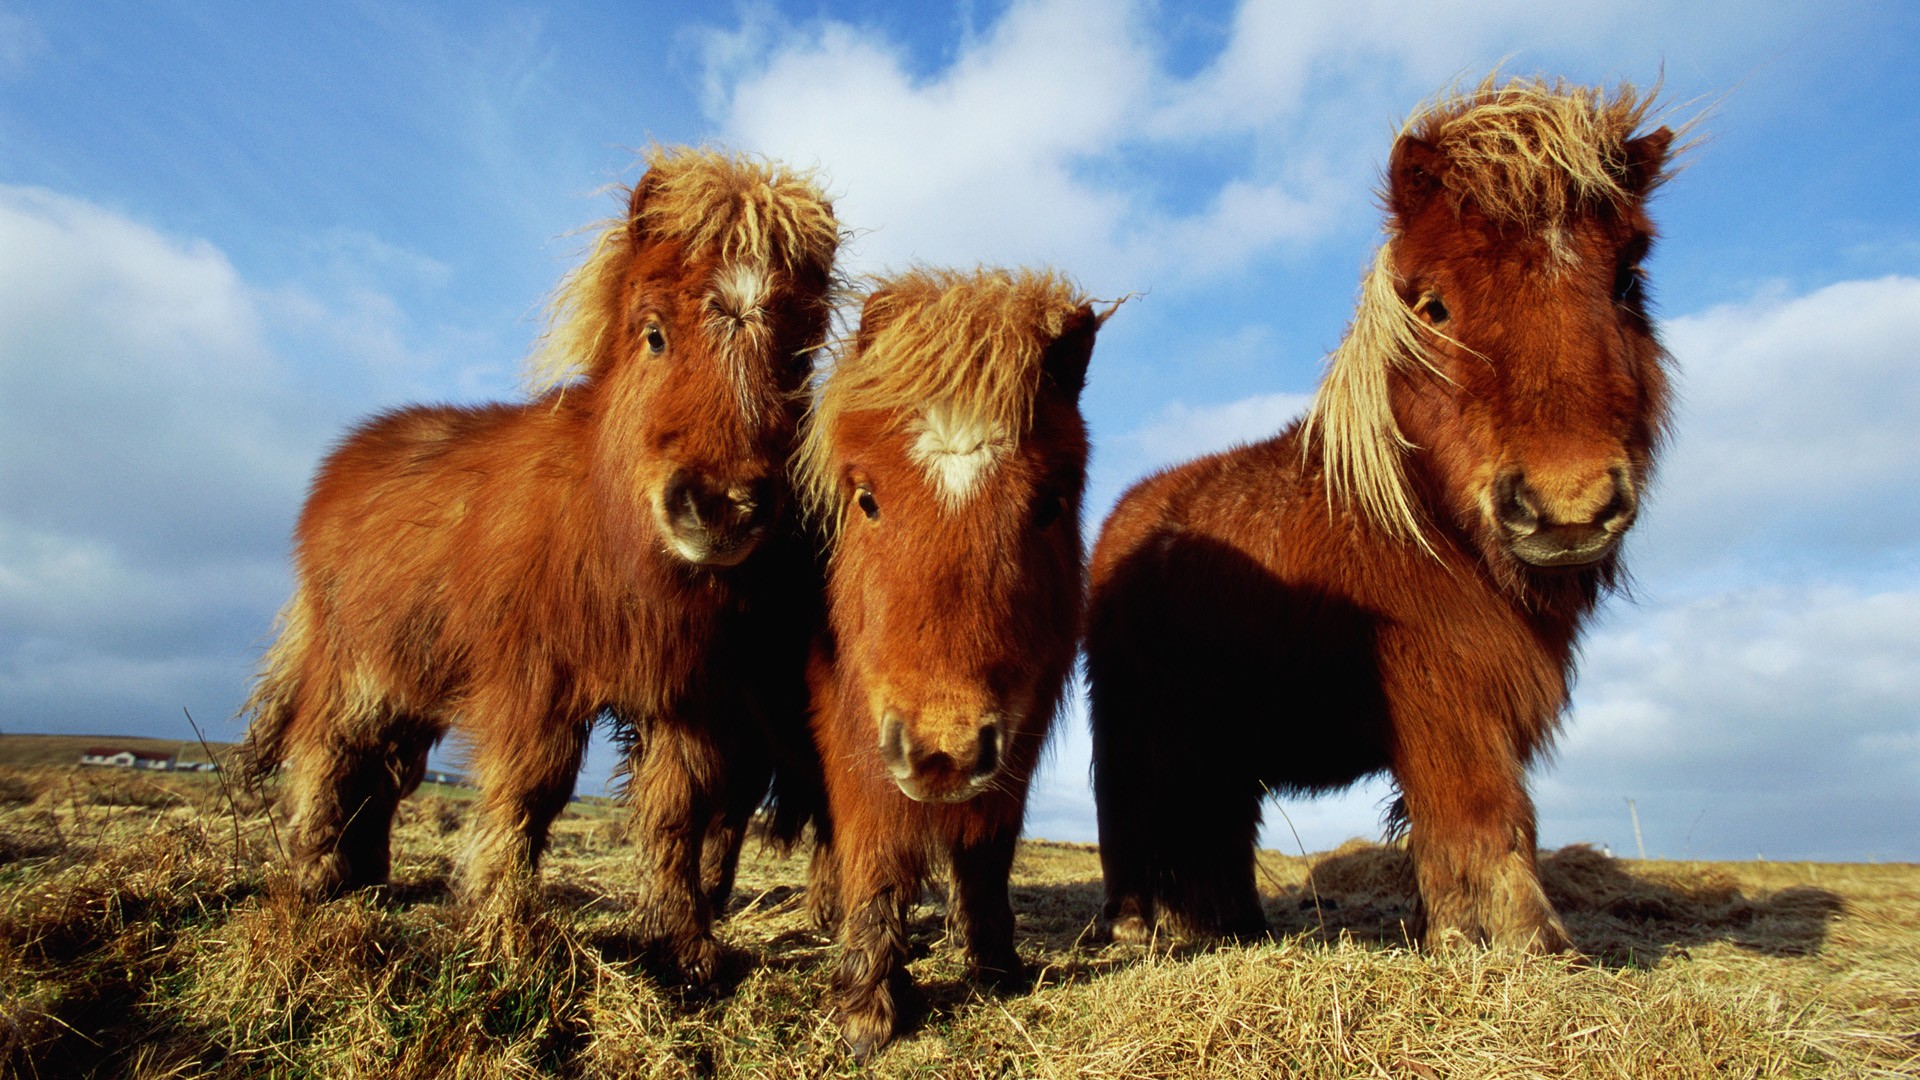 animals, ponies - desktop wallpaper